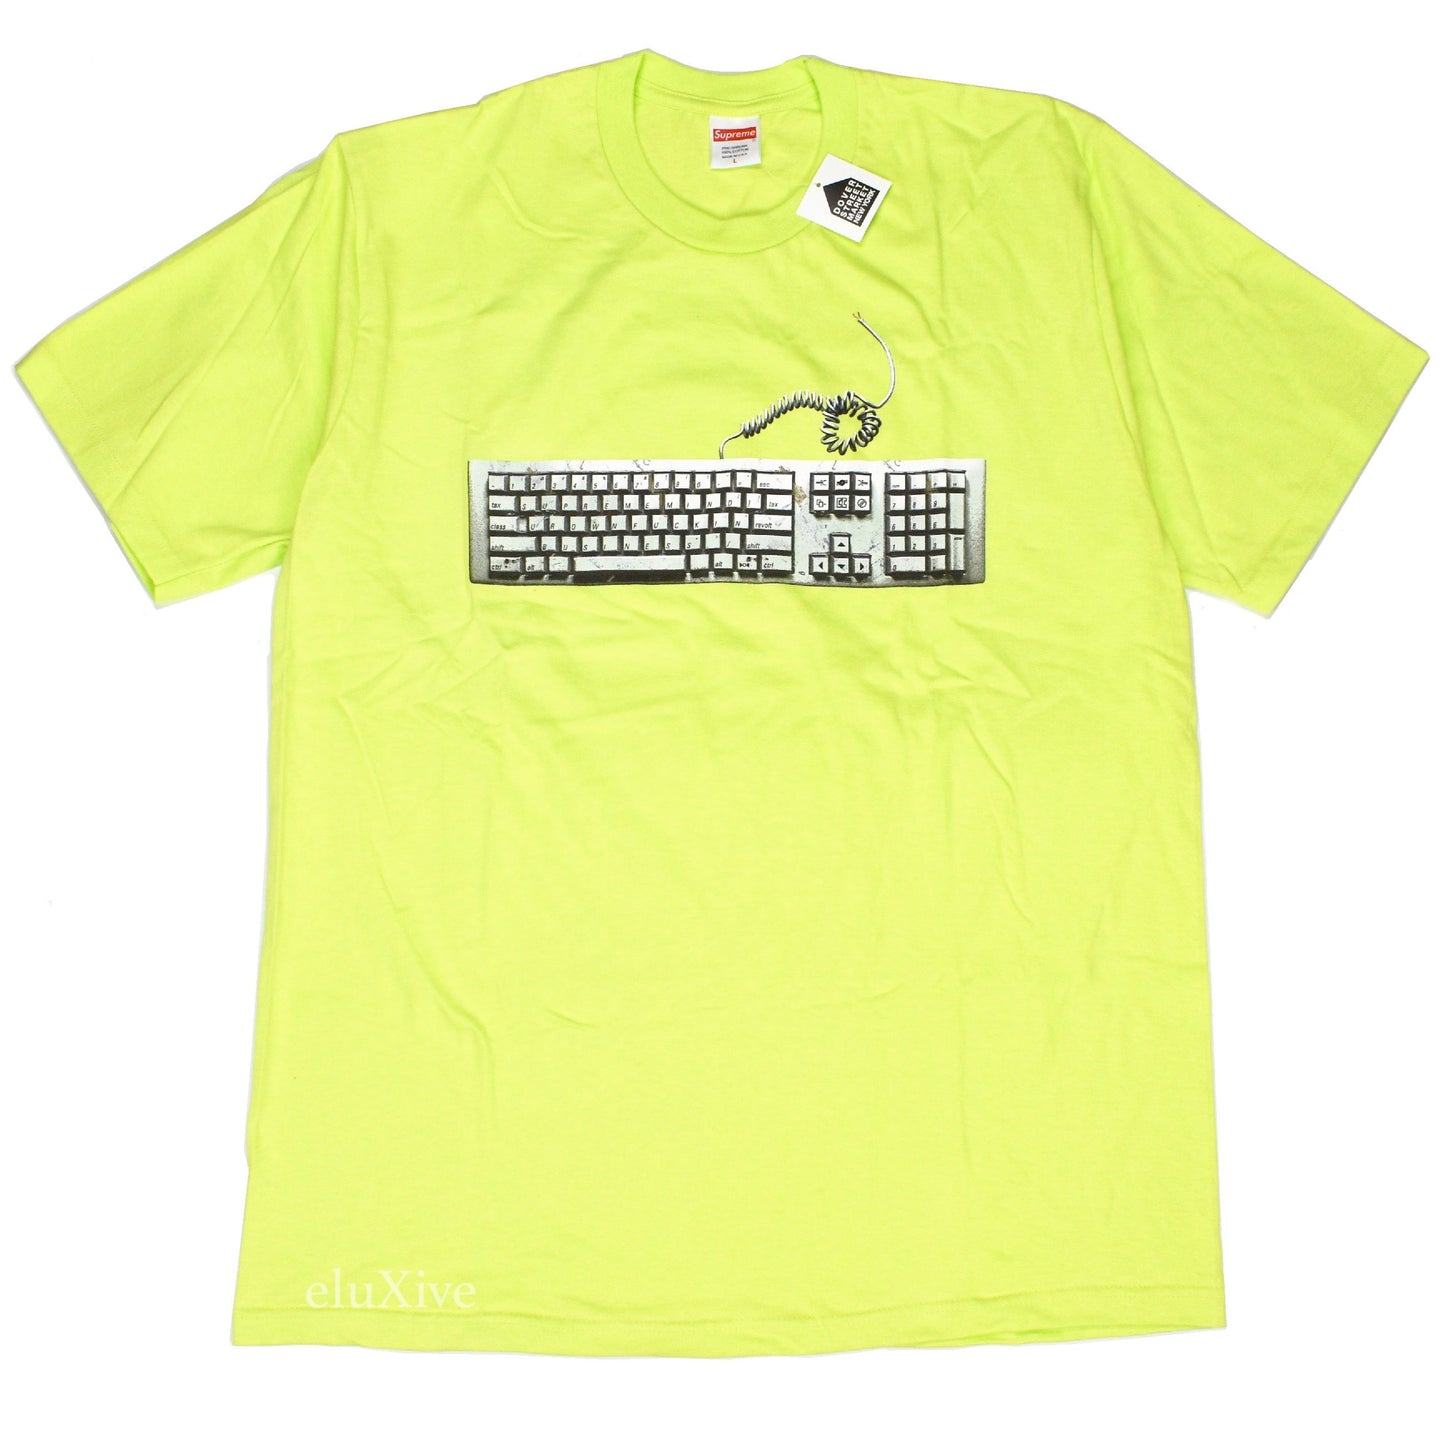 Supreme - Neon Green Keyboard Logo T-Shirt